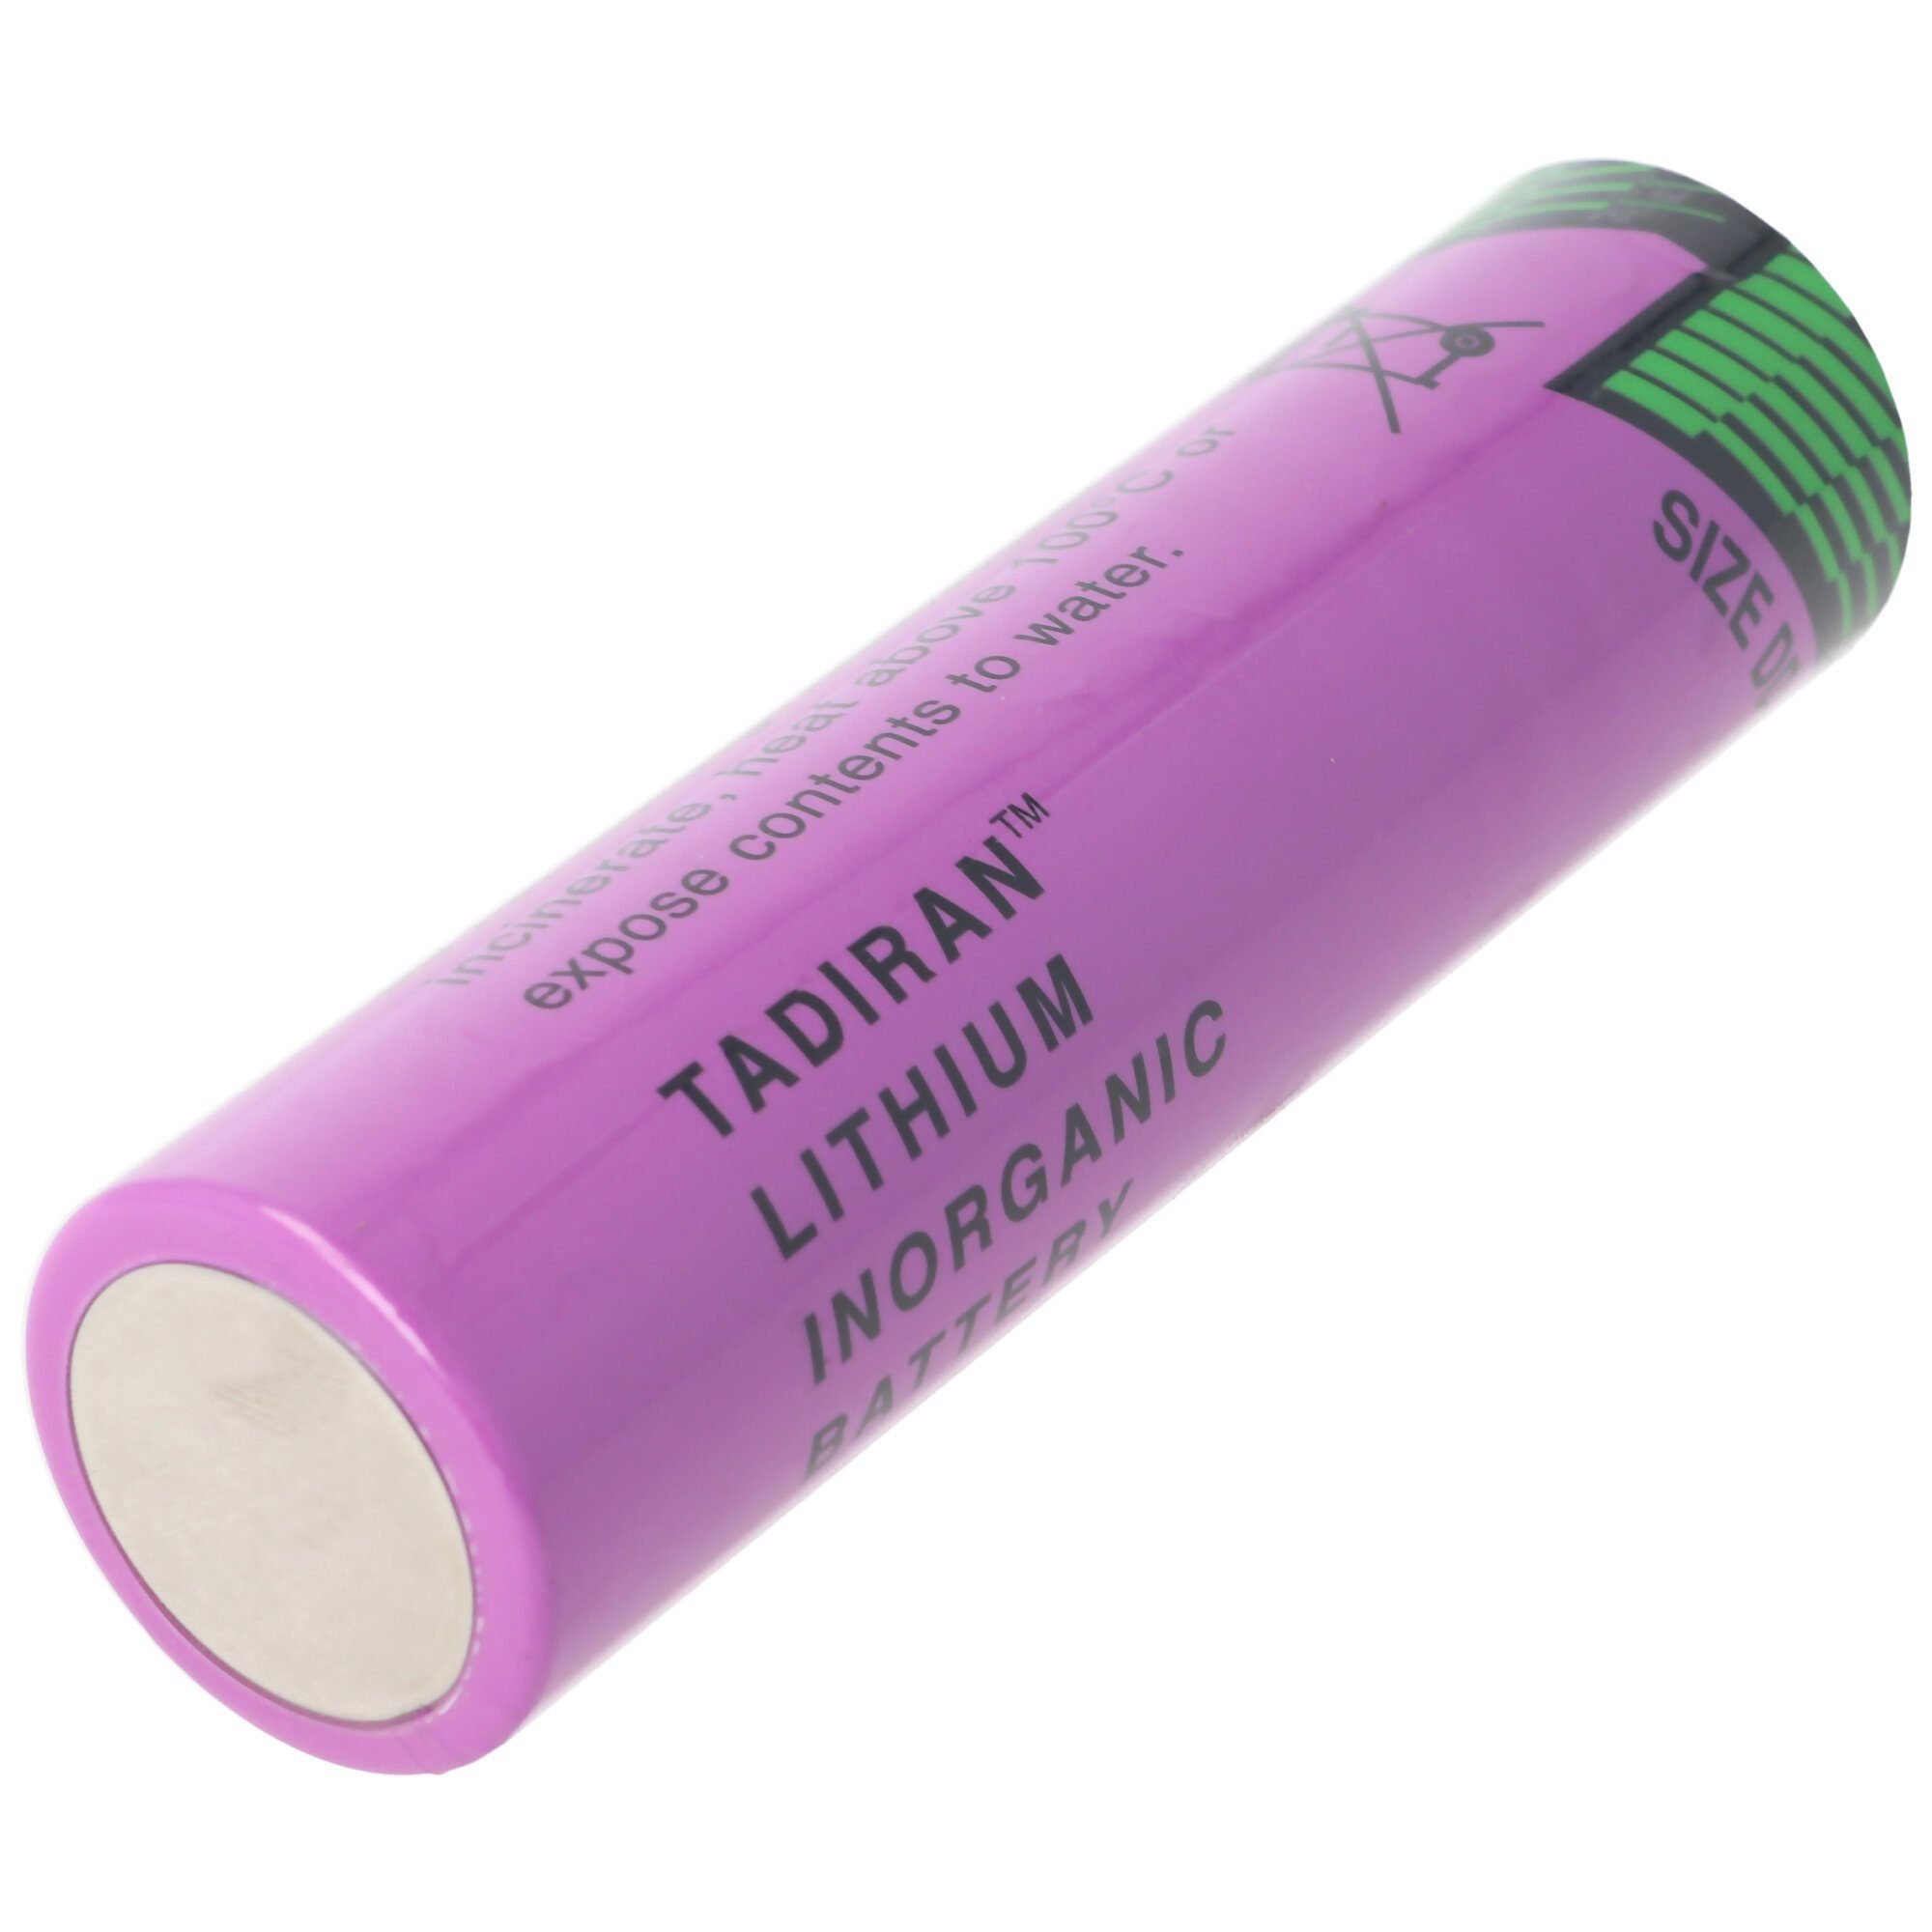 Battery Standard Lithium (3,6 V) Tadiran Batterie, SL-790/S Tadiran SL-2790